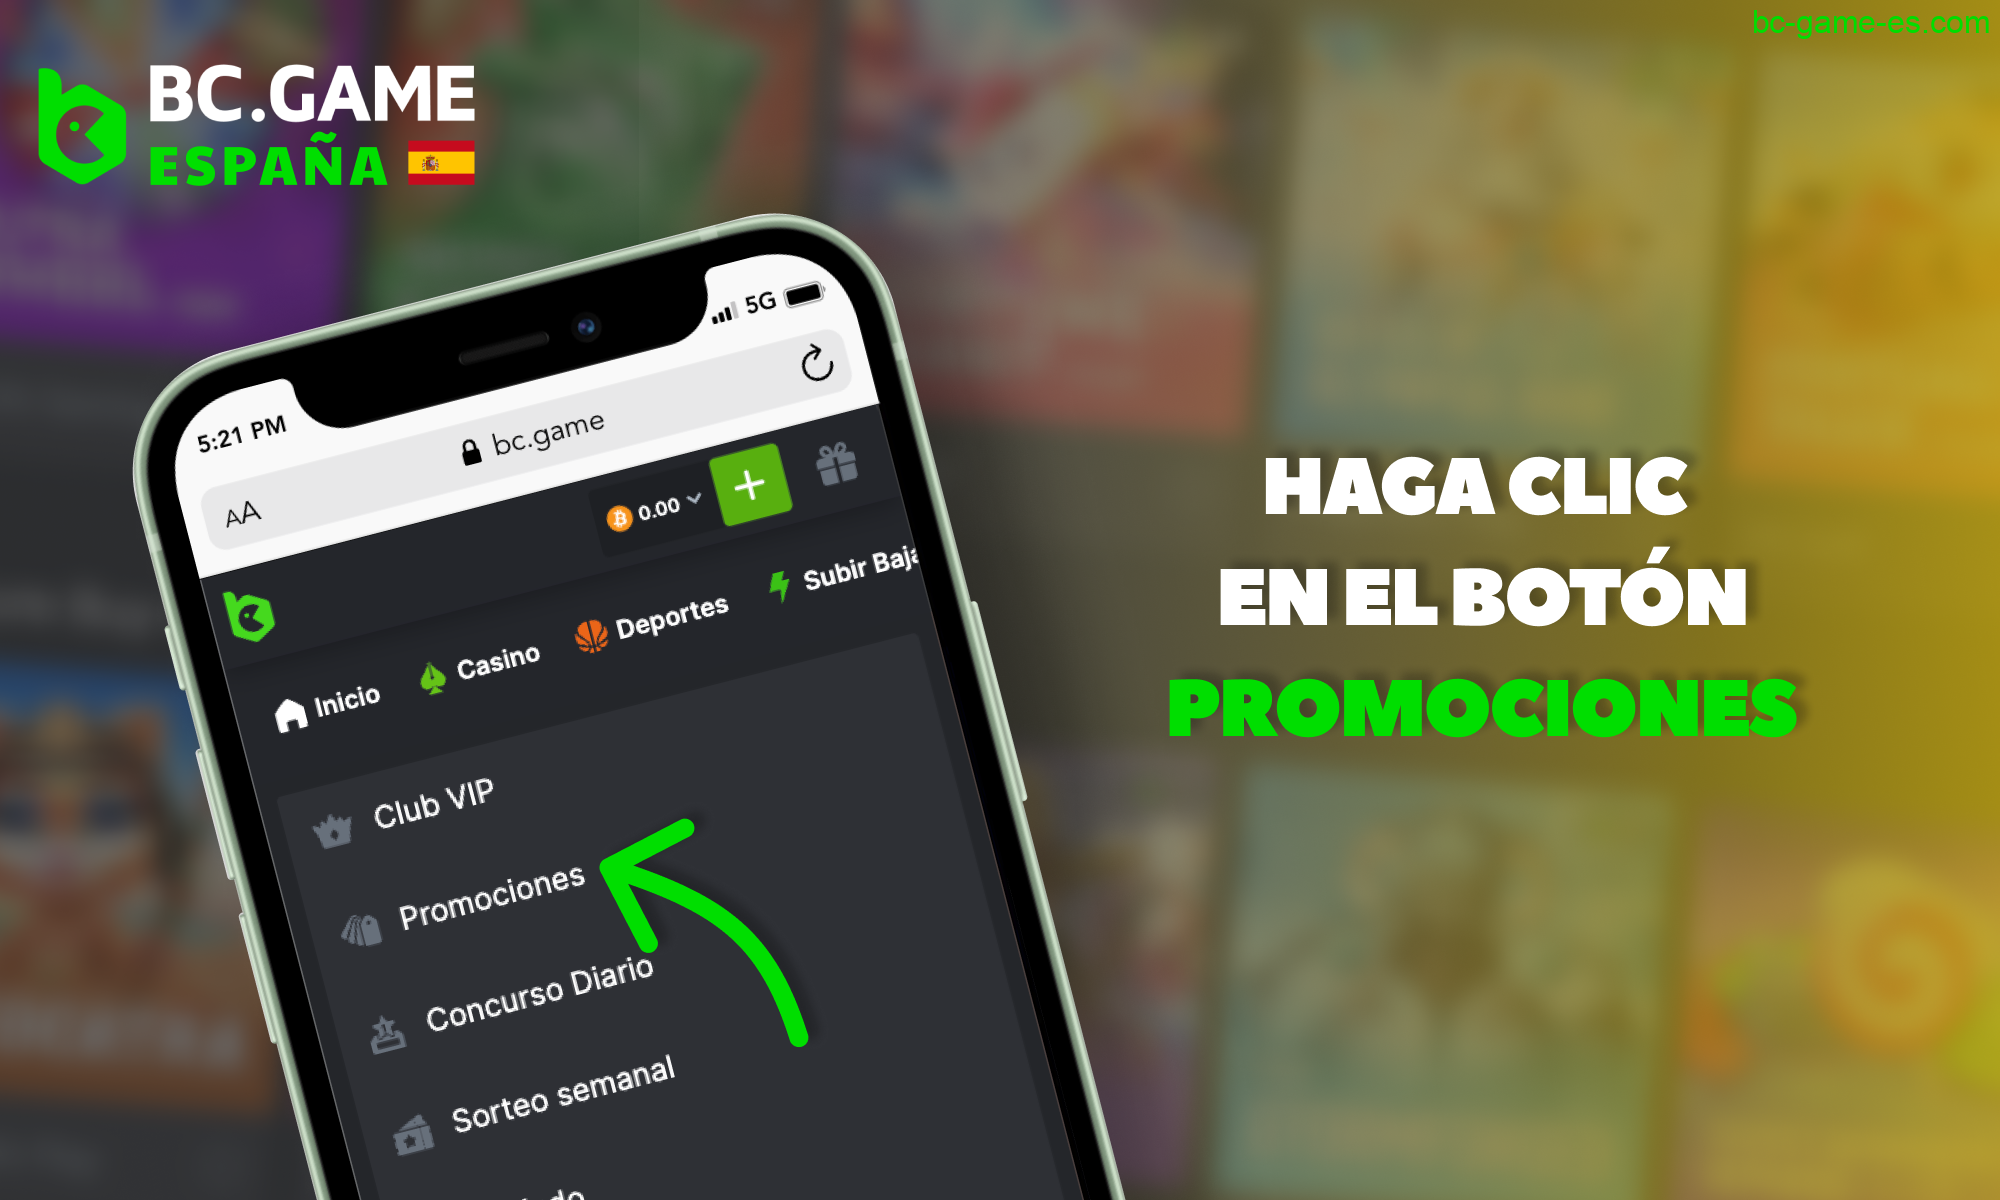 BC Game España - ve a la sección "Promociones"